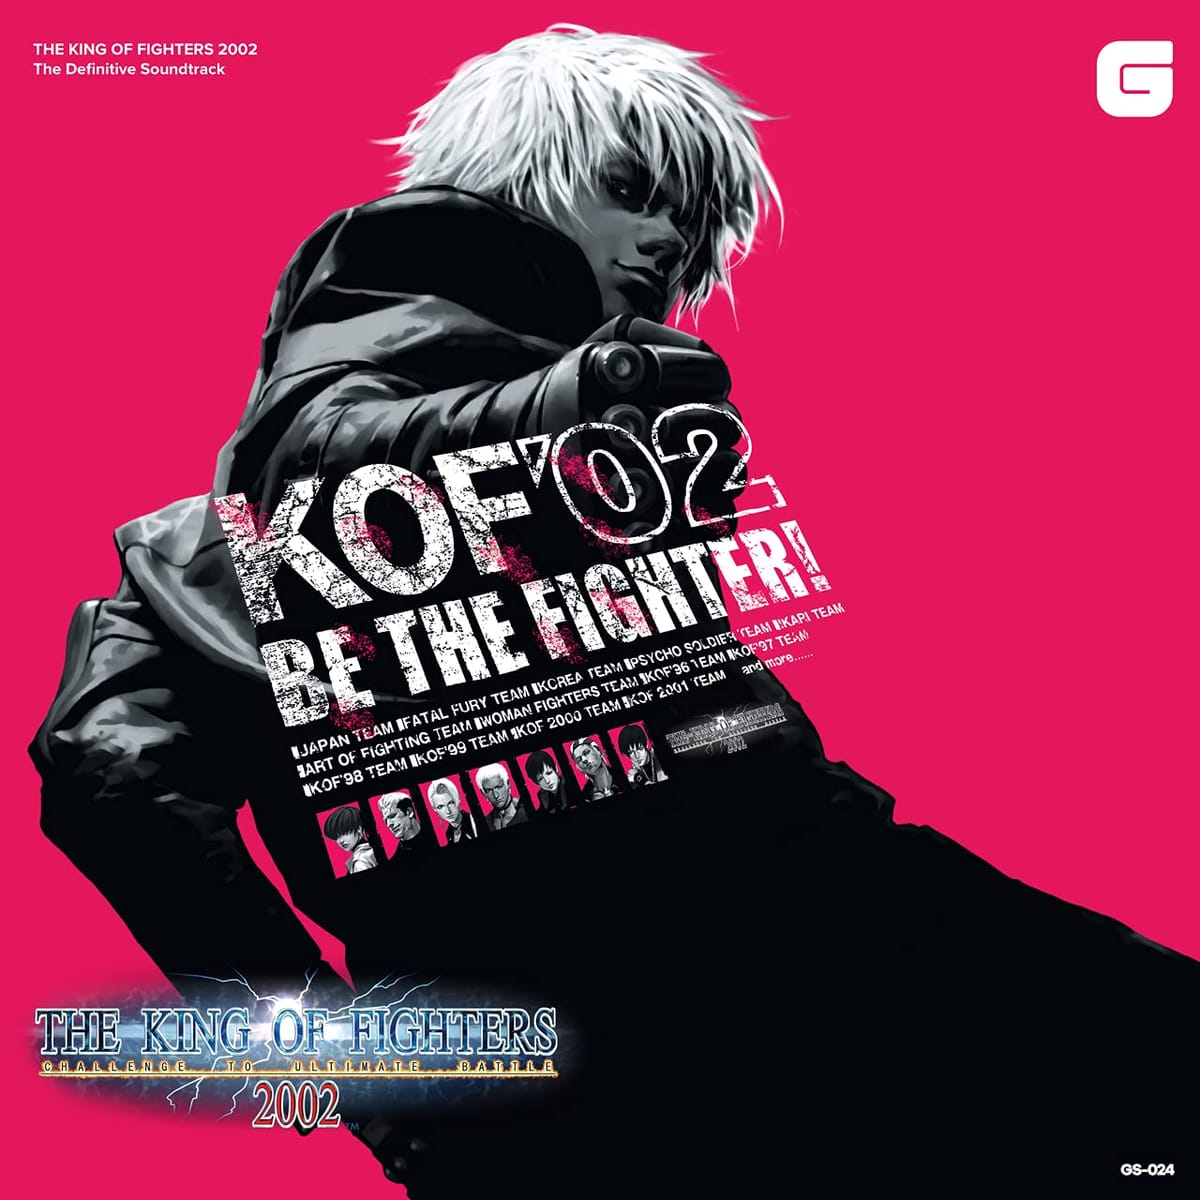 The King of Fighters 2002(U LOIut@C^[Y2002) SՃTEhgbN CD